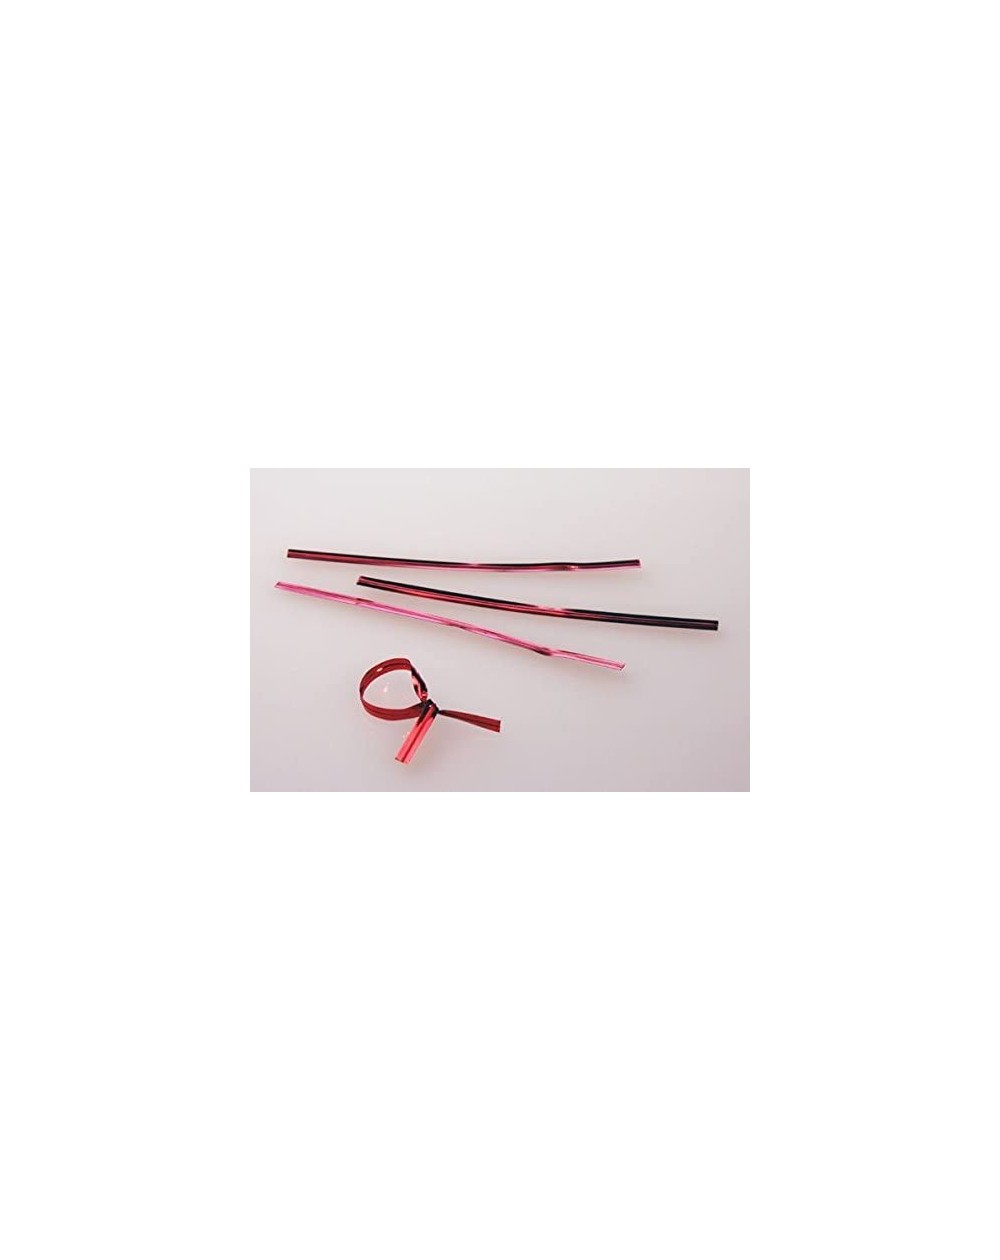 Favors Metallic Plastic Twist Tie (1000 Pack) (Standard (4")- Red) - Red - CT185K4AHKO $6.60